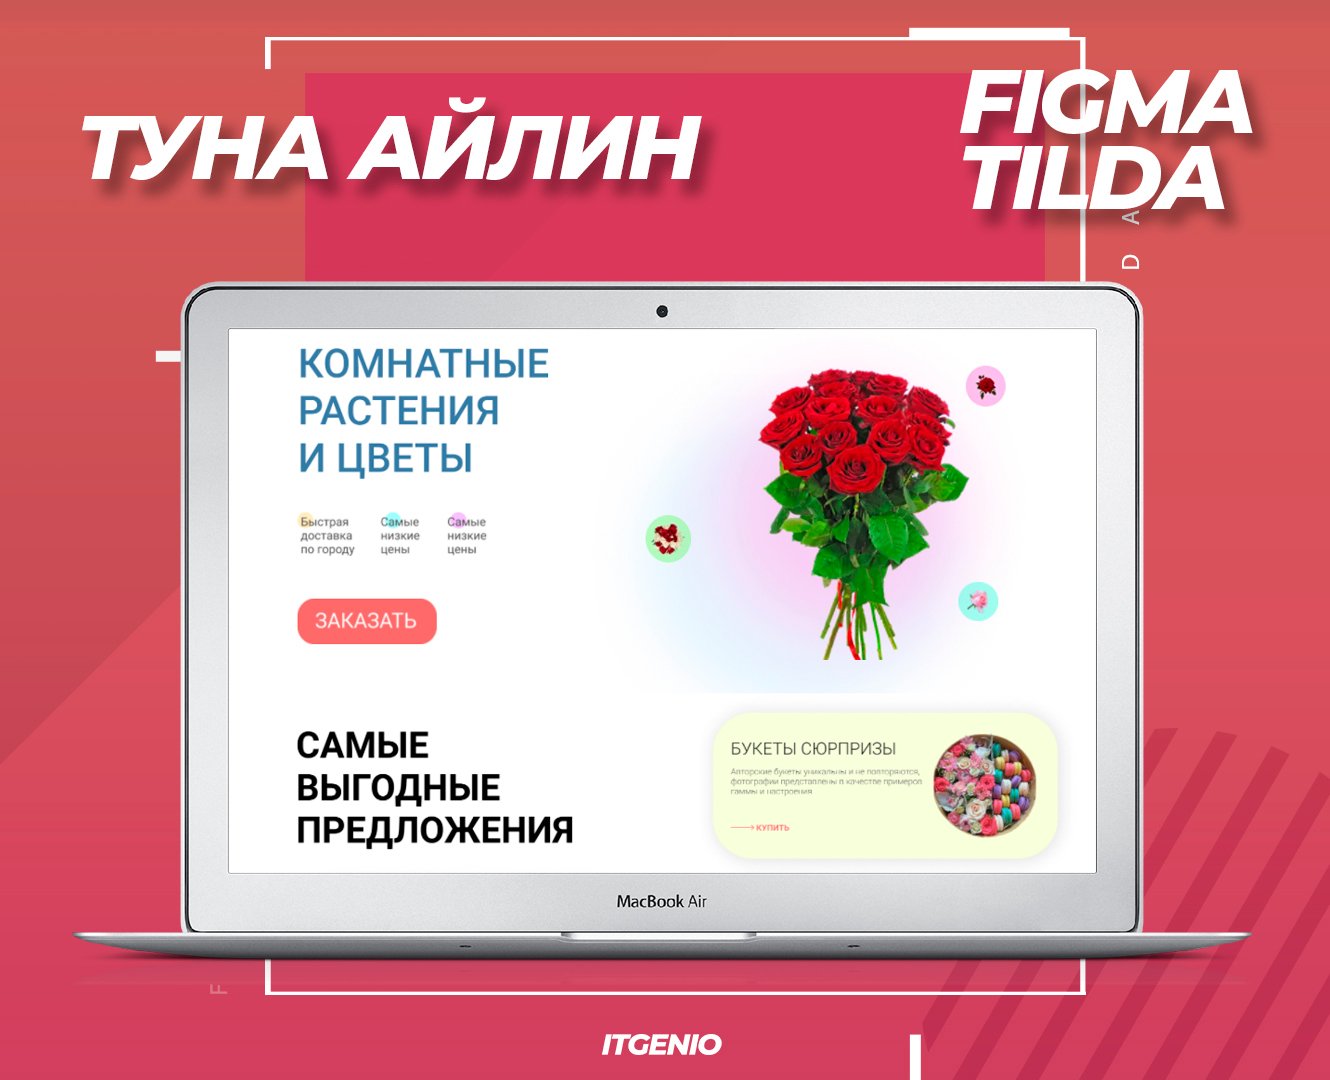 Айтигенио – Онлайн курсы по веб-дизайну и созданию сайтов в Figma и Tilda для детей 9-18 лет, фото курса 4